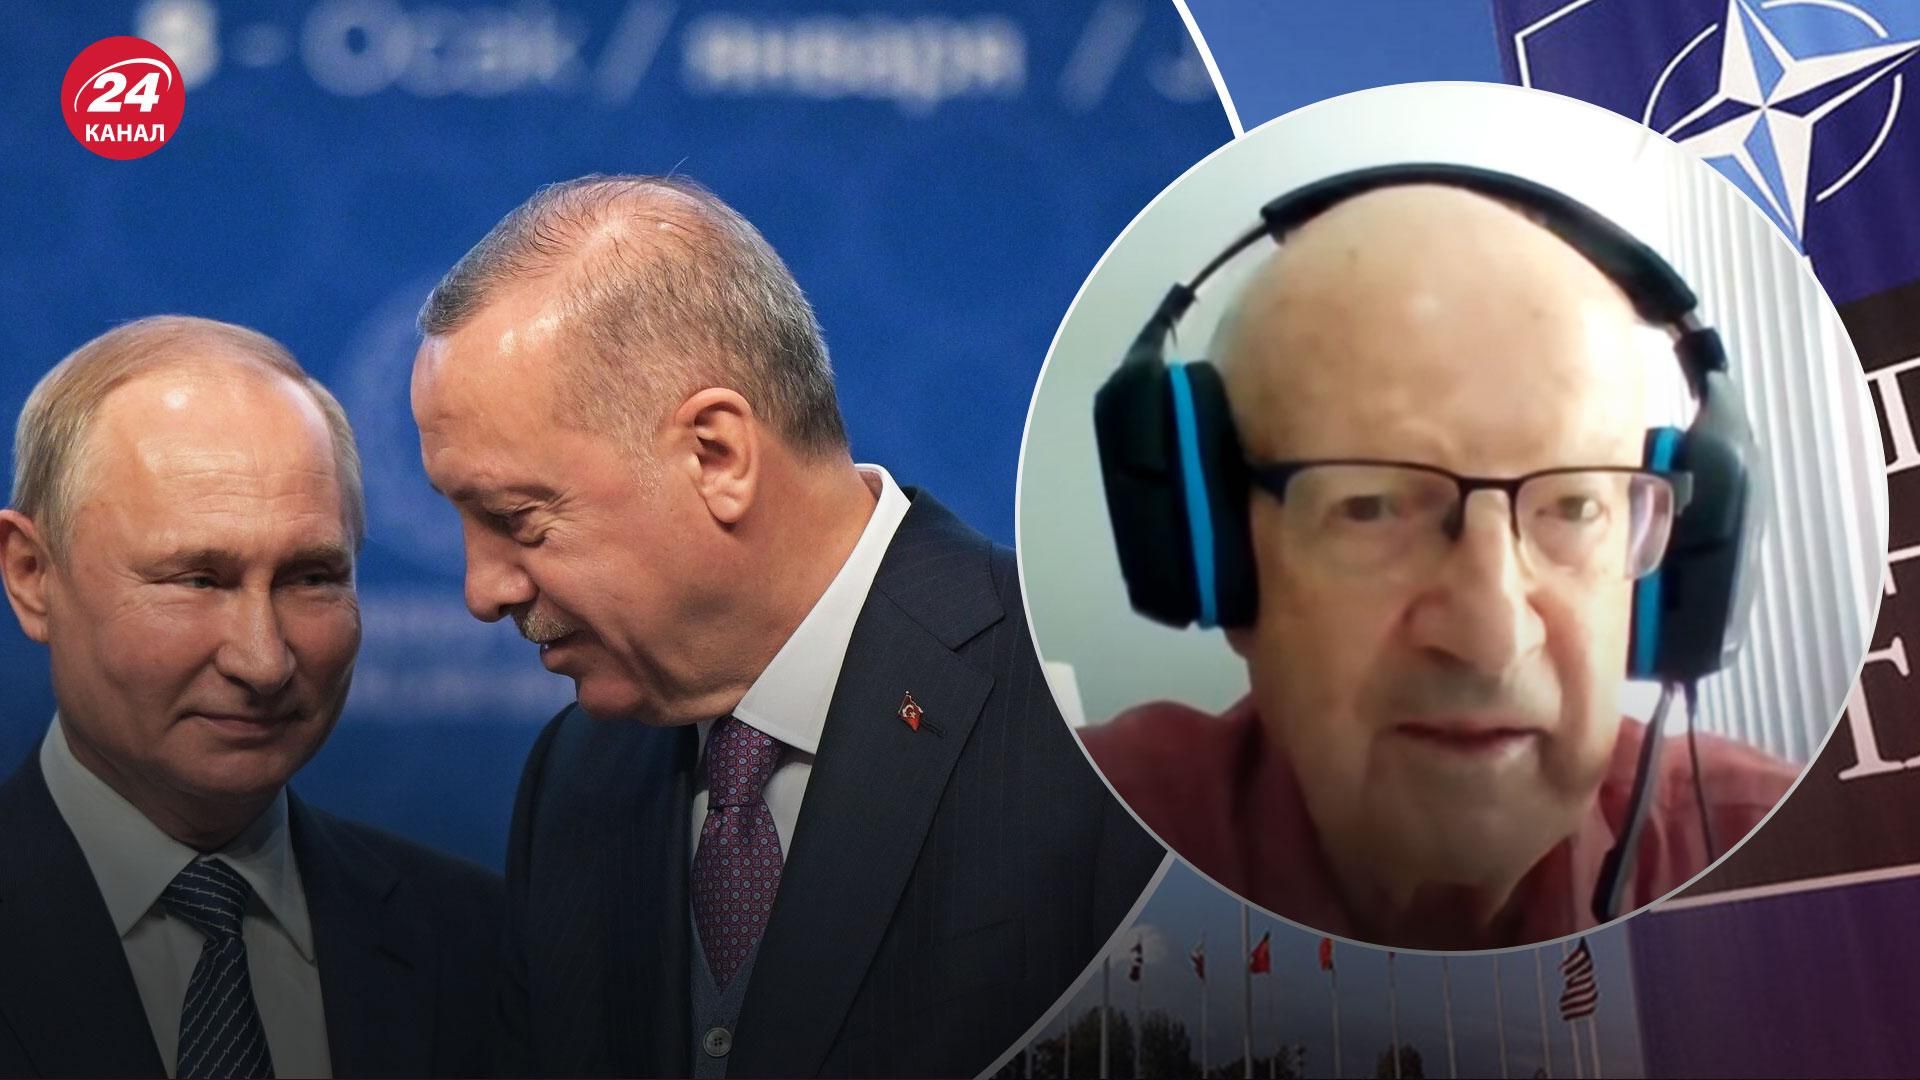 Ердоган принизив Путіна – НАТО контролює Південний Кавказ